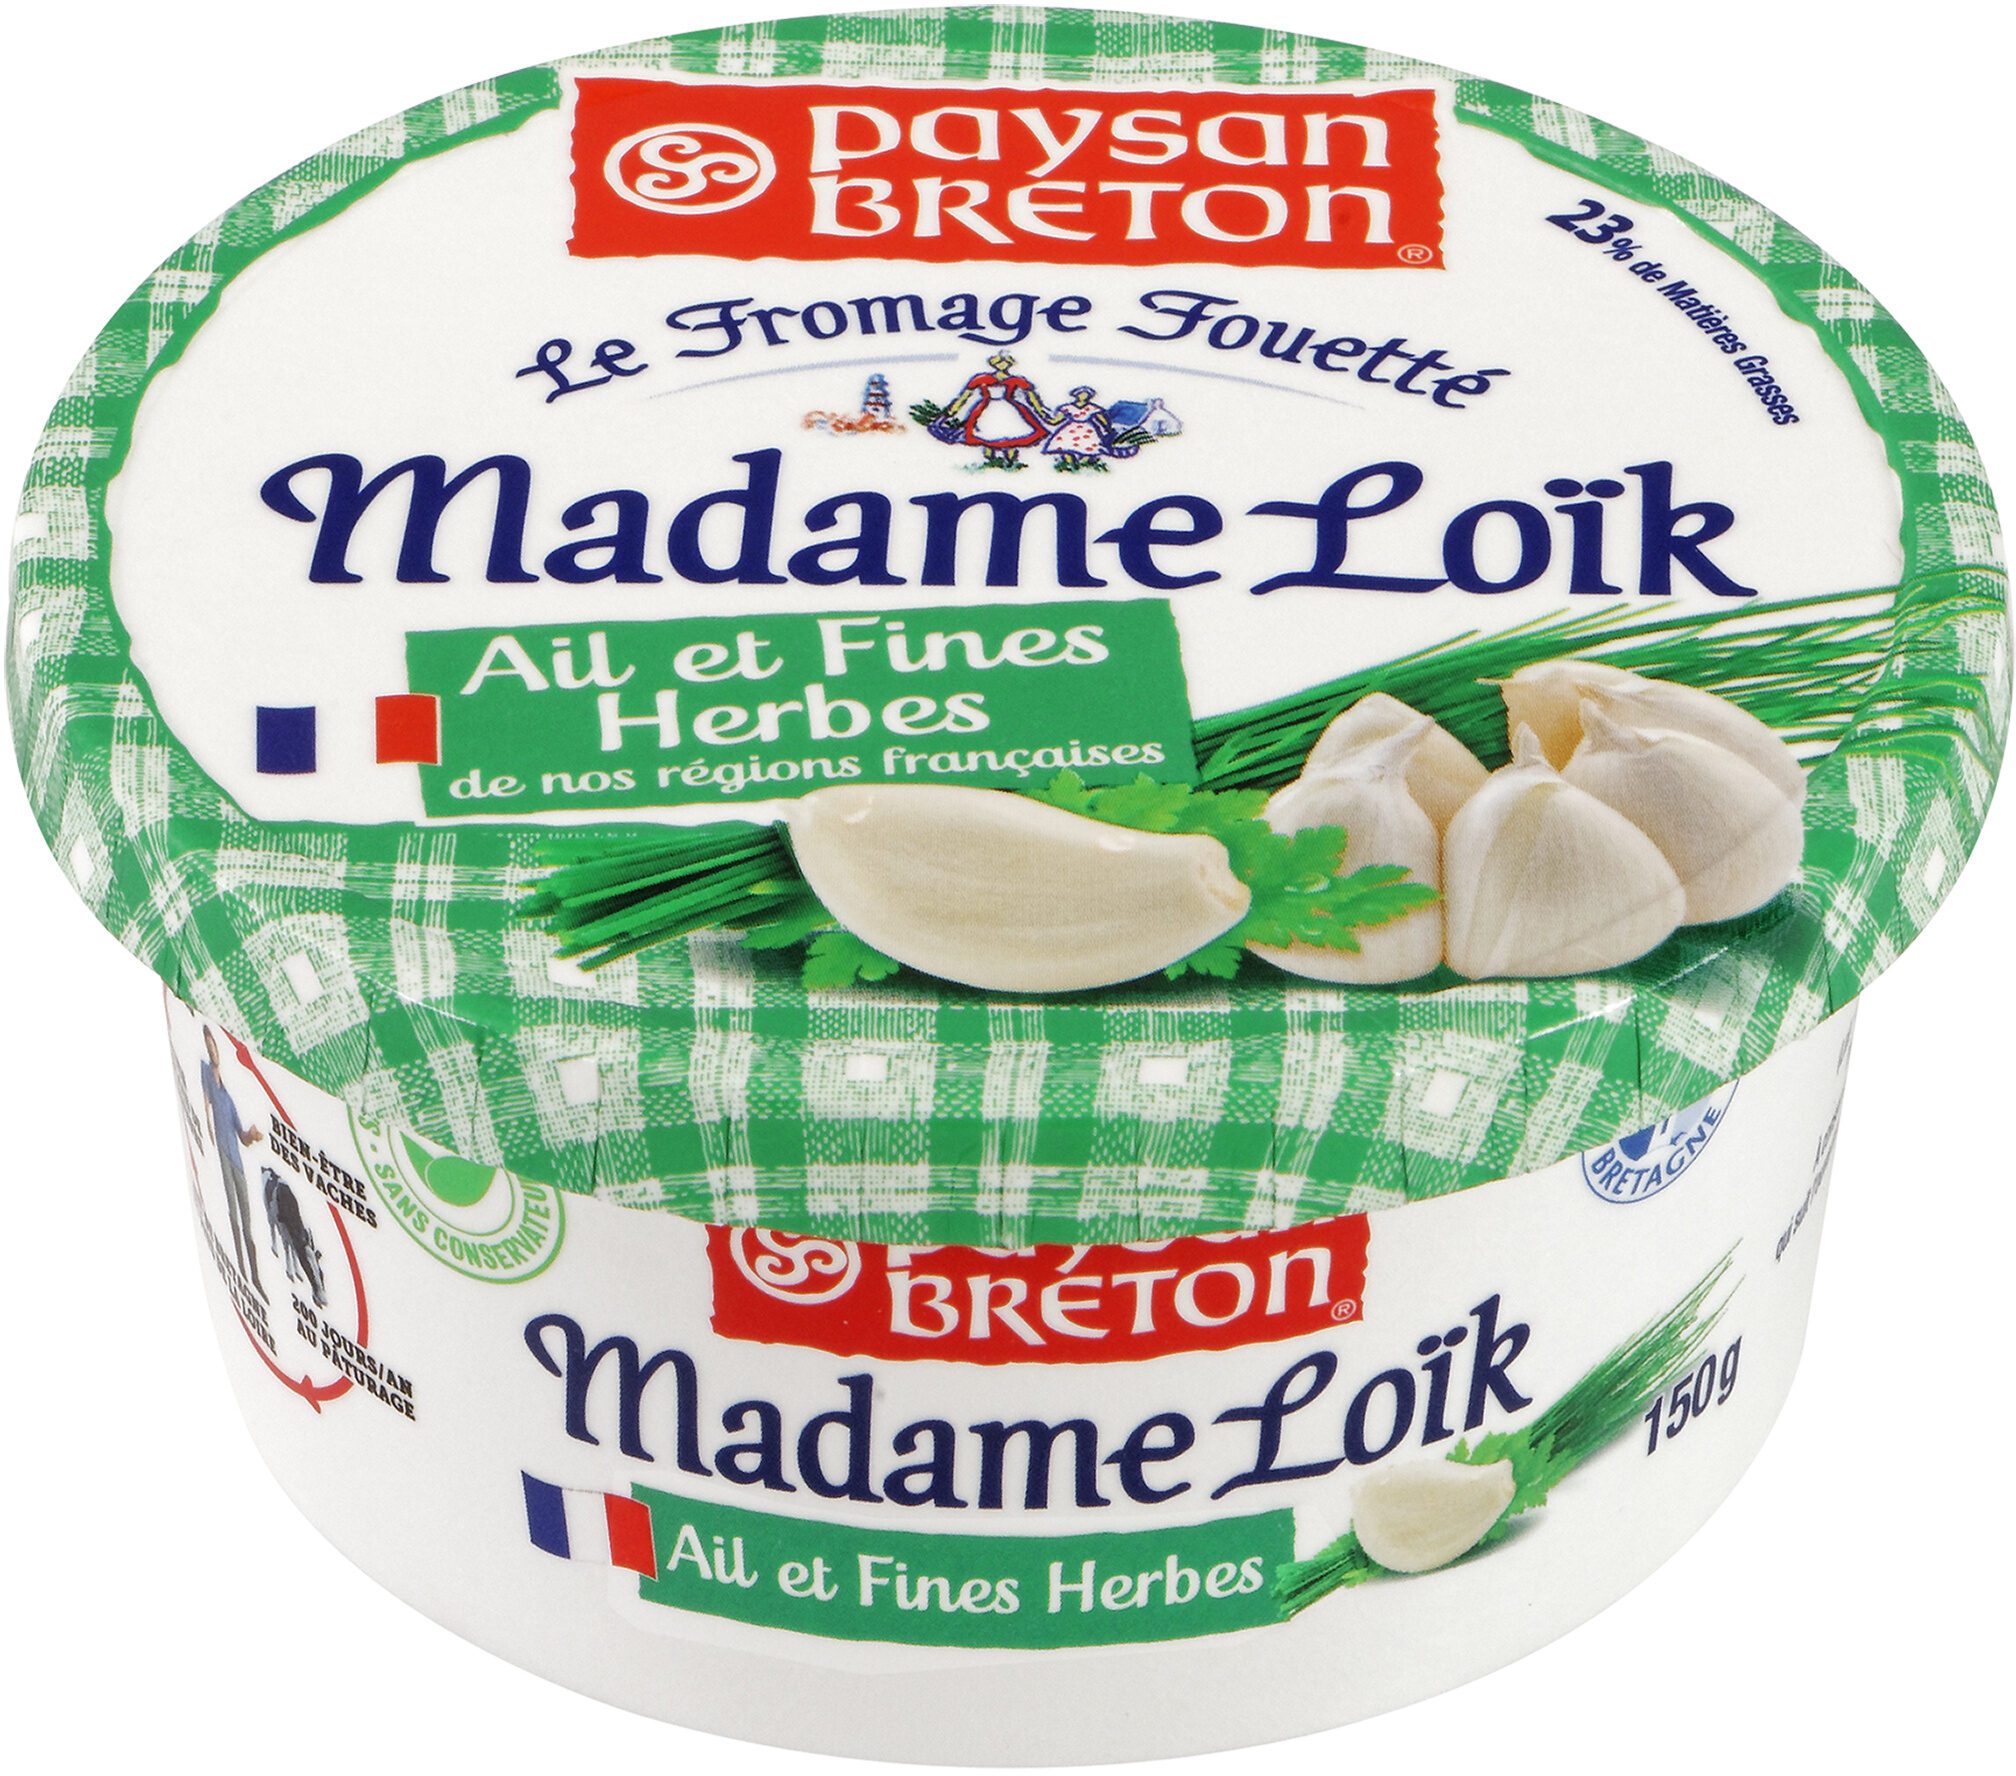 Paysan Breton - Le Fromage Fouetté Madame Loïk - Ail et fines herbes de nos régions françaises - Product - fr